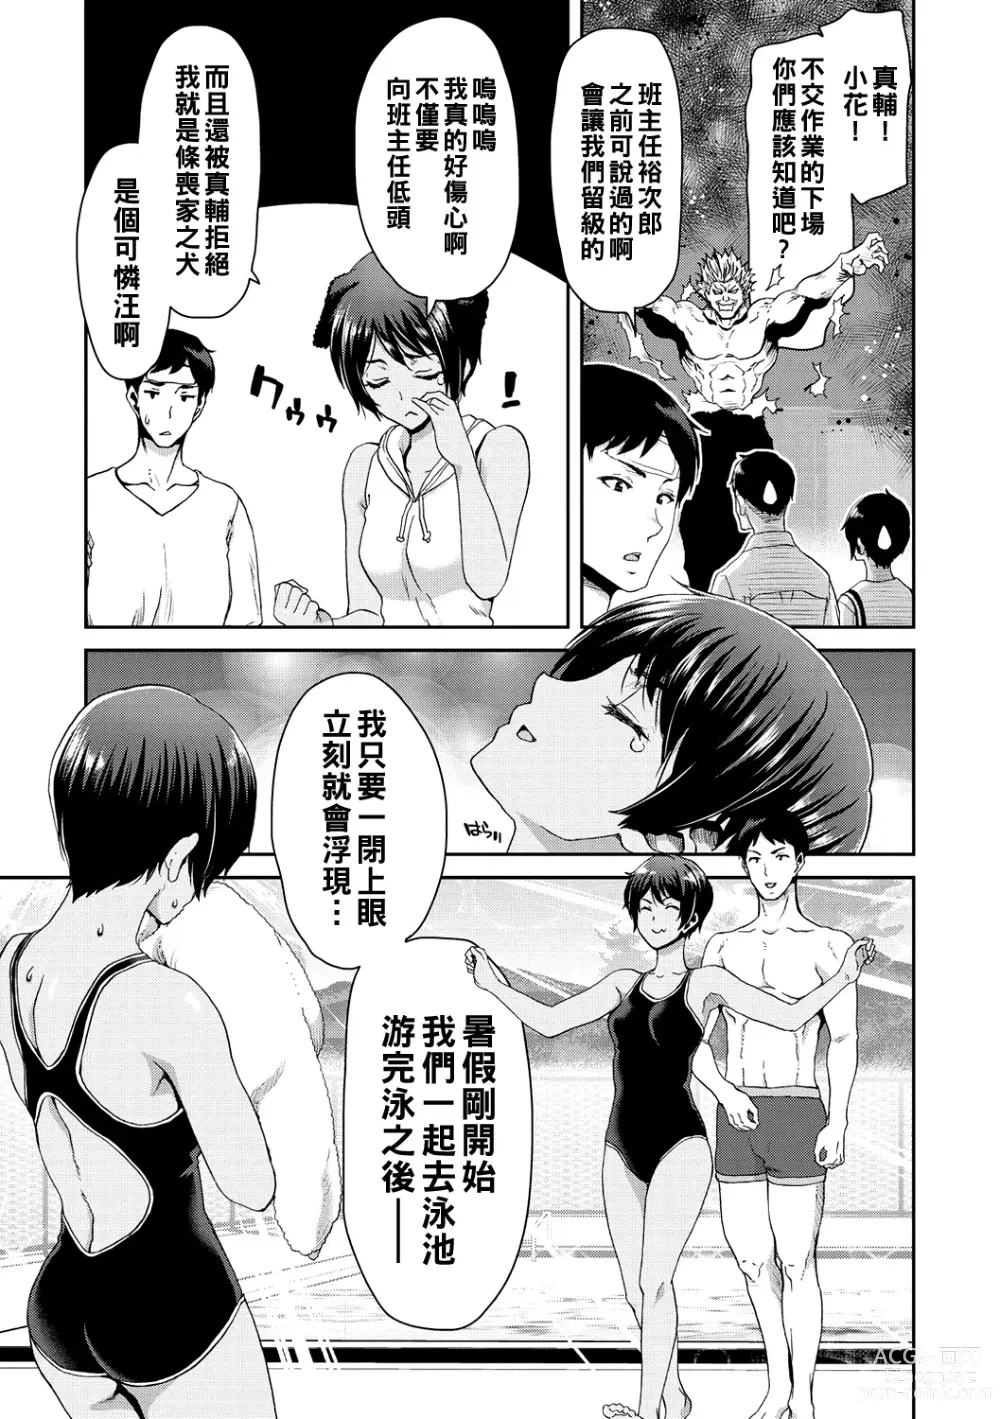 Page 131 of manga Shiyokka Hametsu SEX